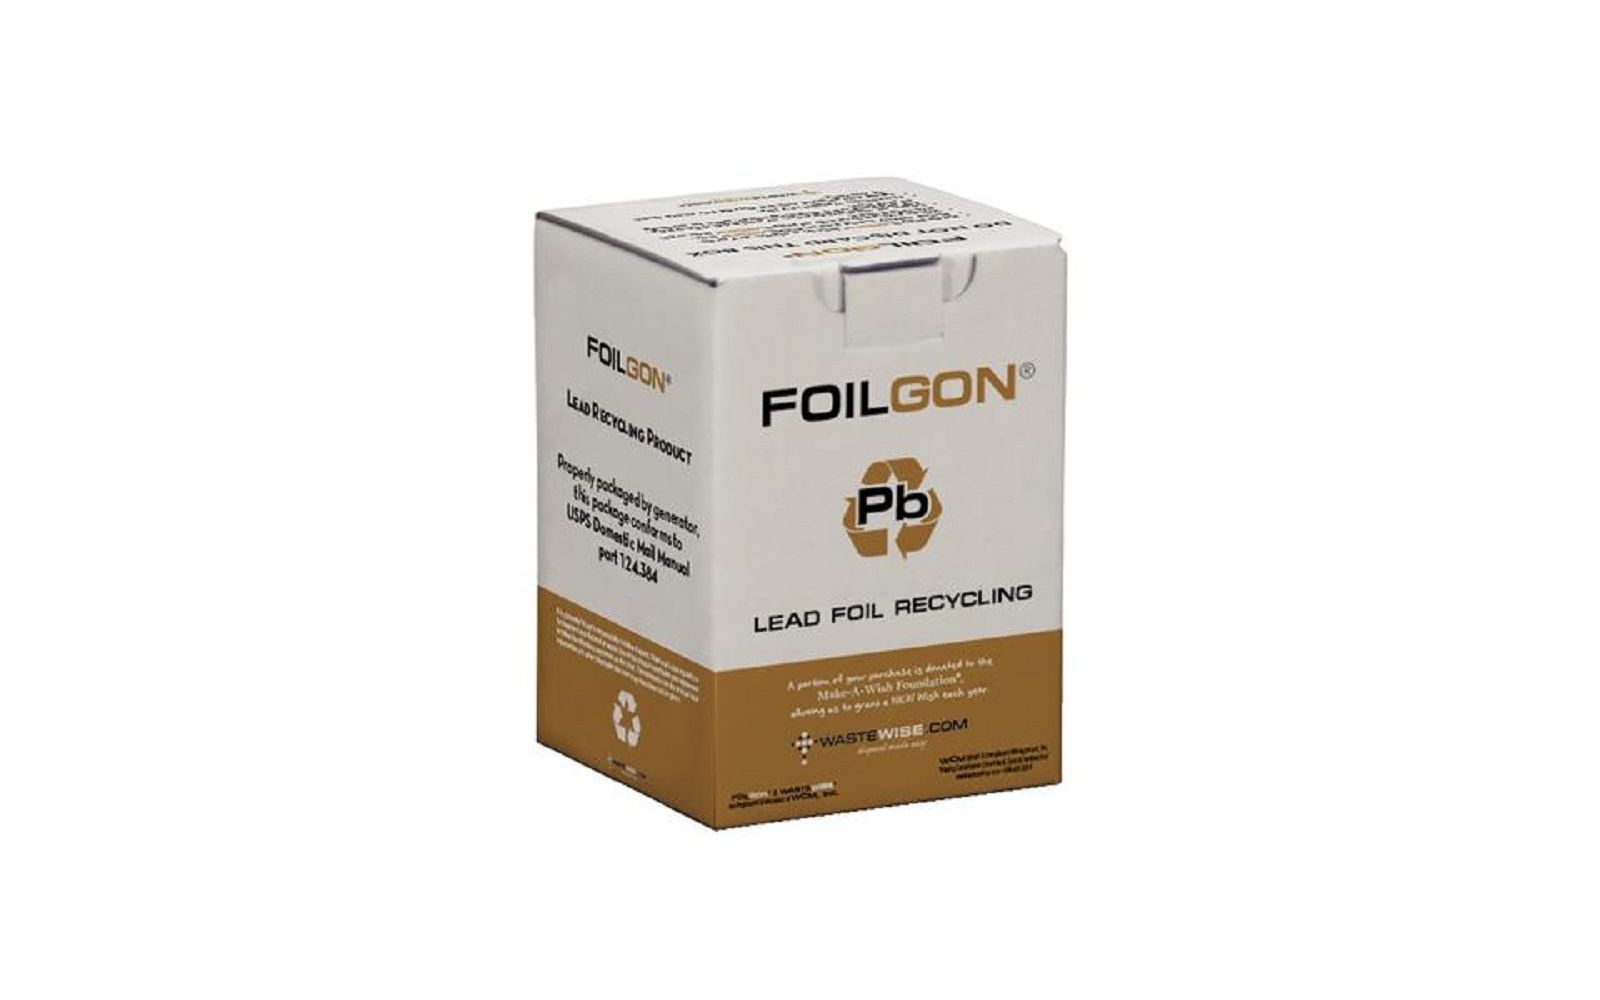 Foilgon® lead foil recycling